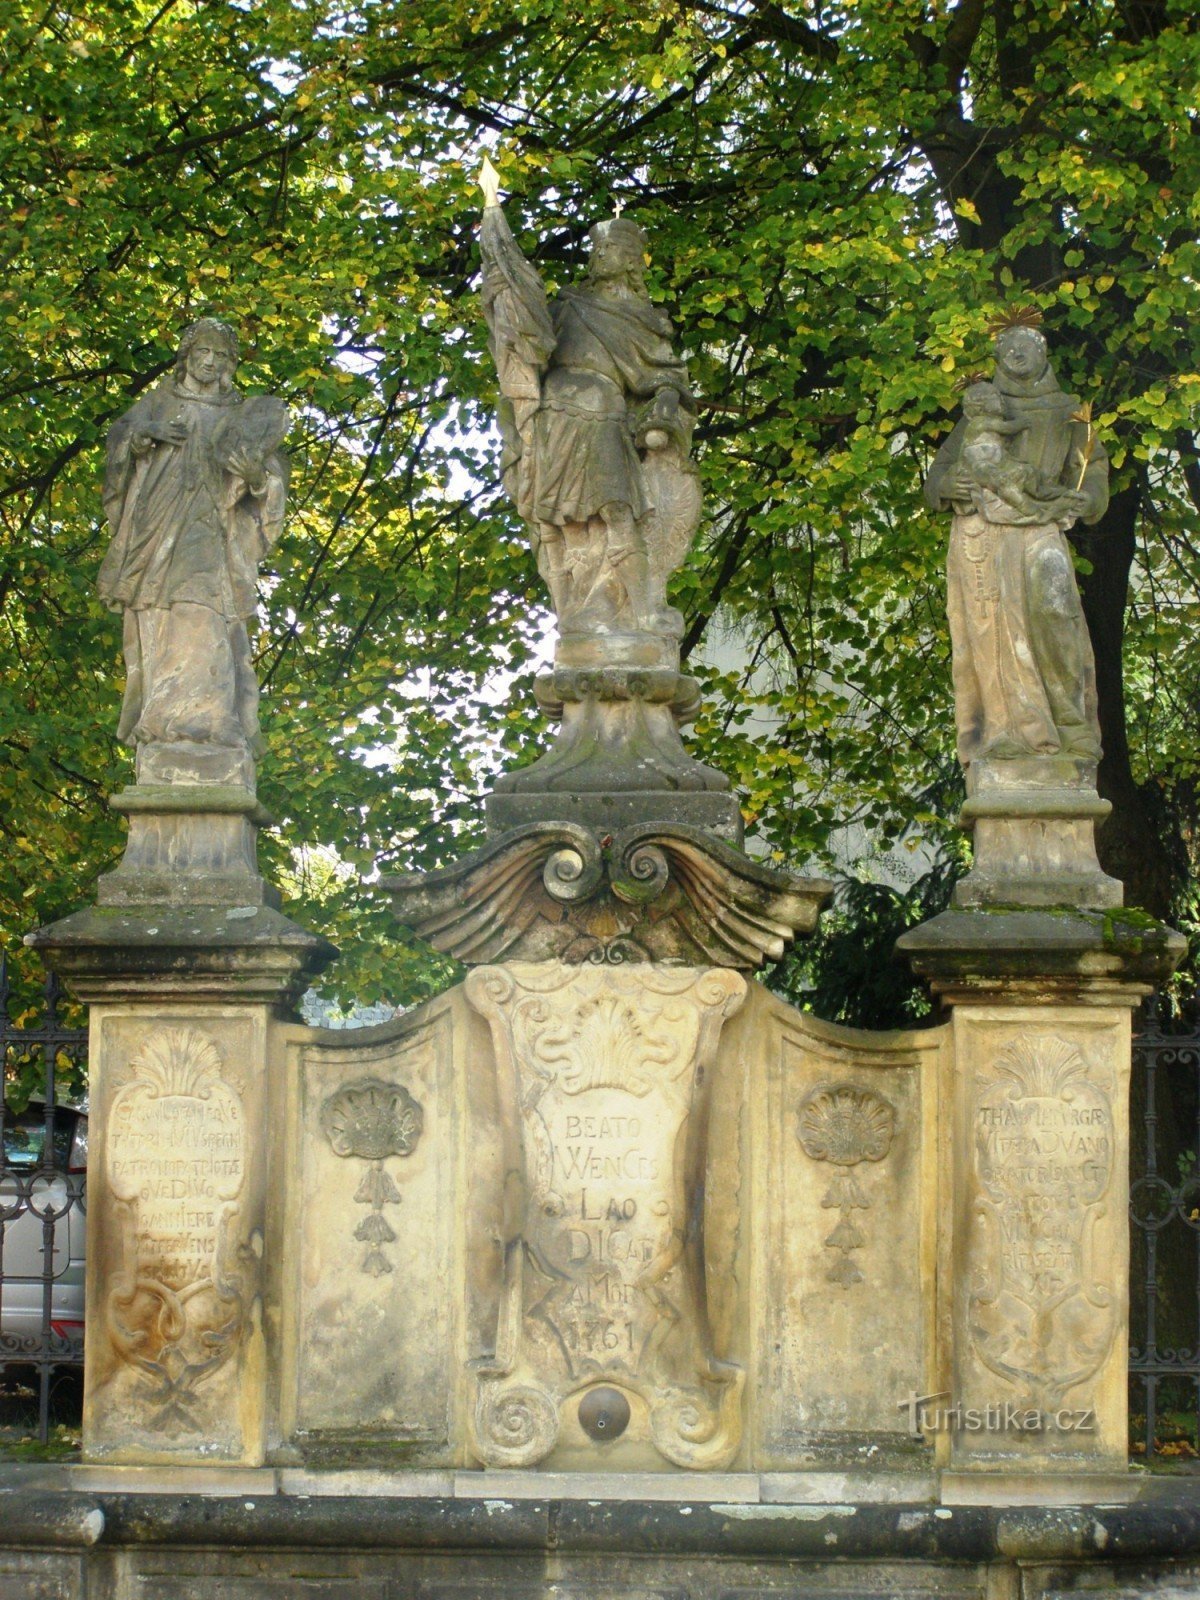 Turnov - fontein met een standbeeld van St. Wenceslas